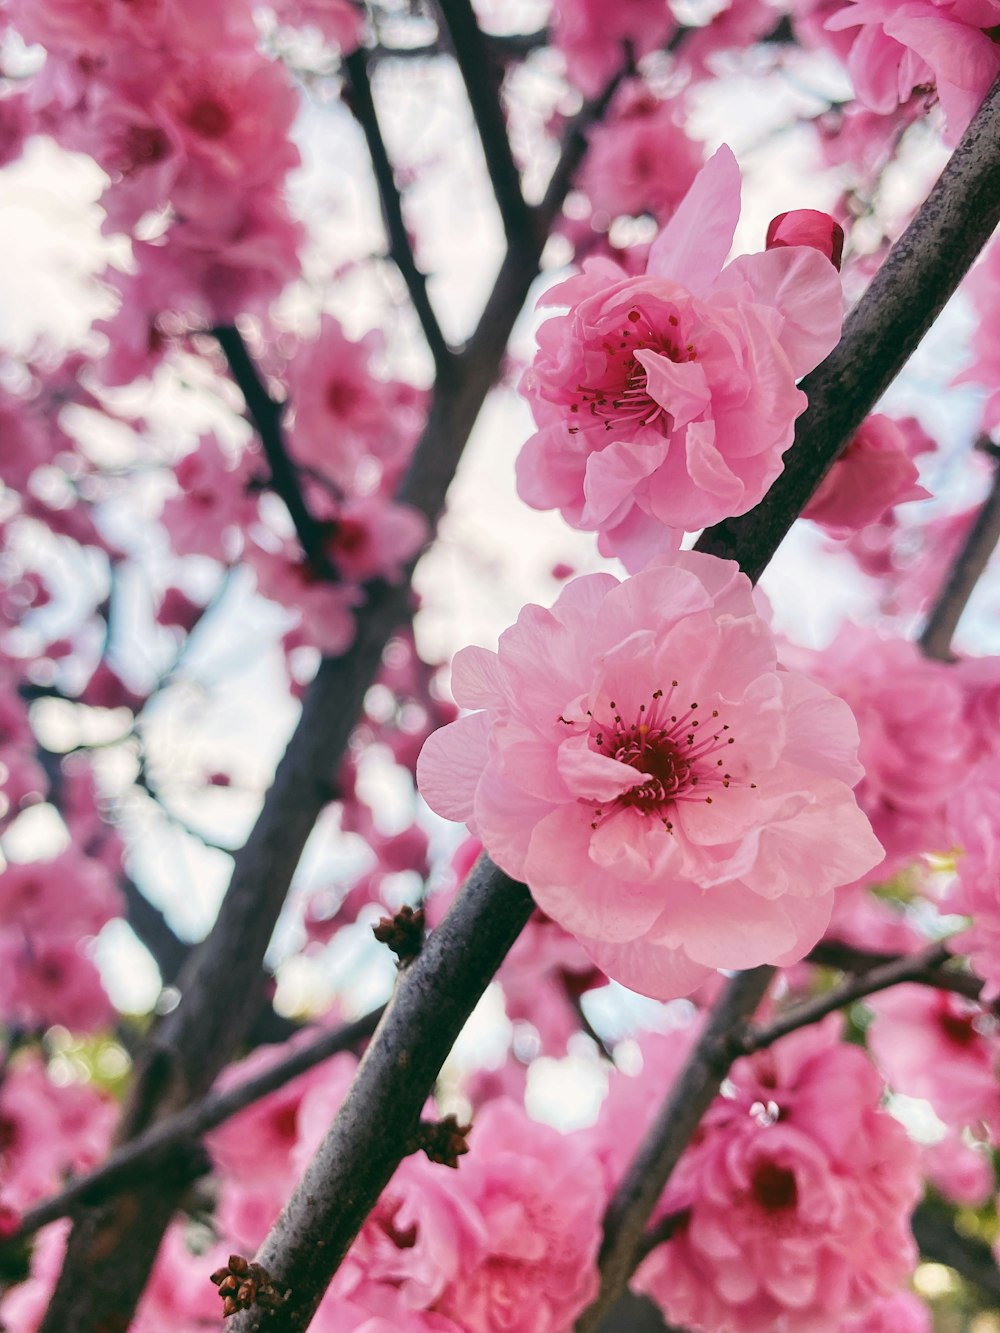 Las flores rosadas florecen en un árbol